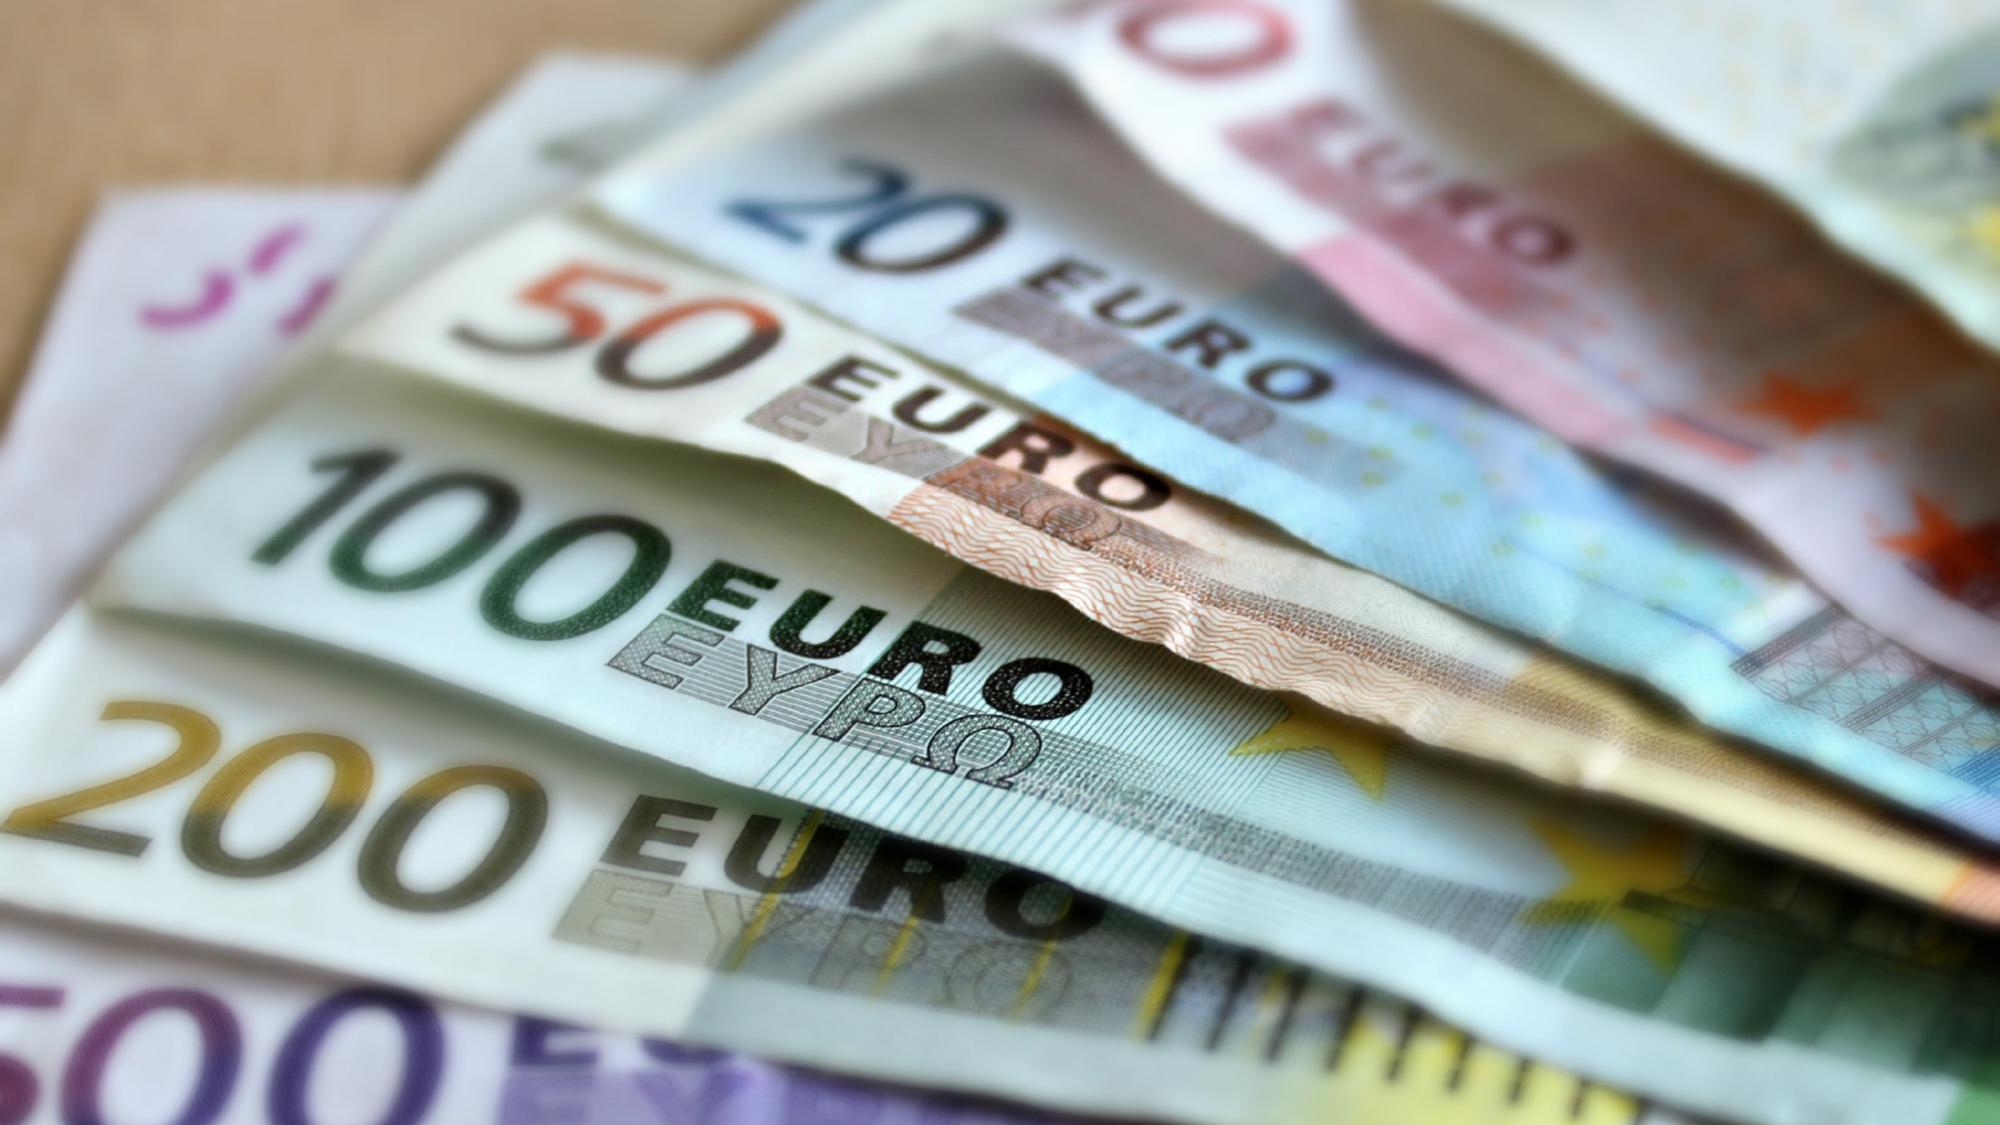 Euro-Scheine aufgef?chert auf einem Tisch